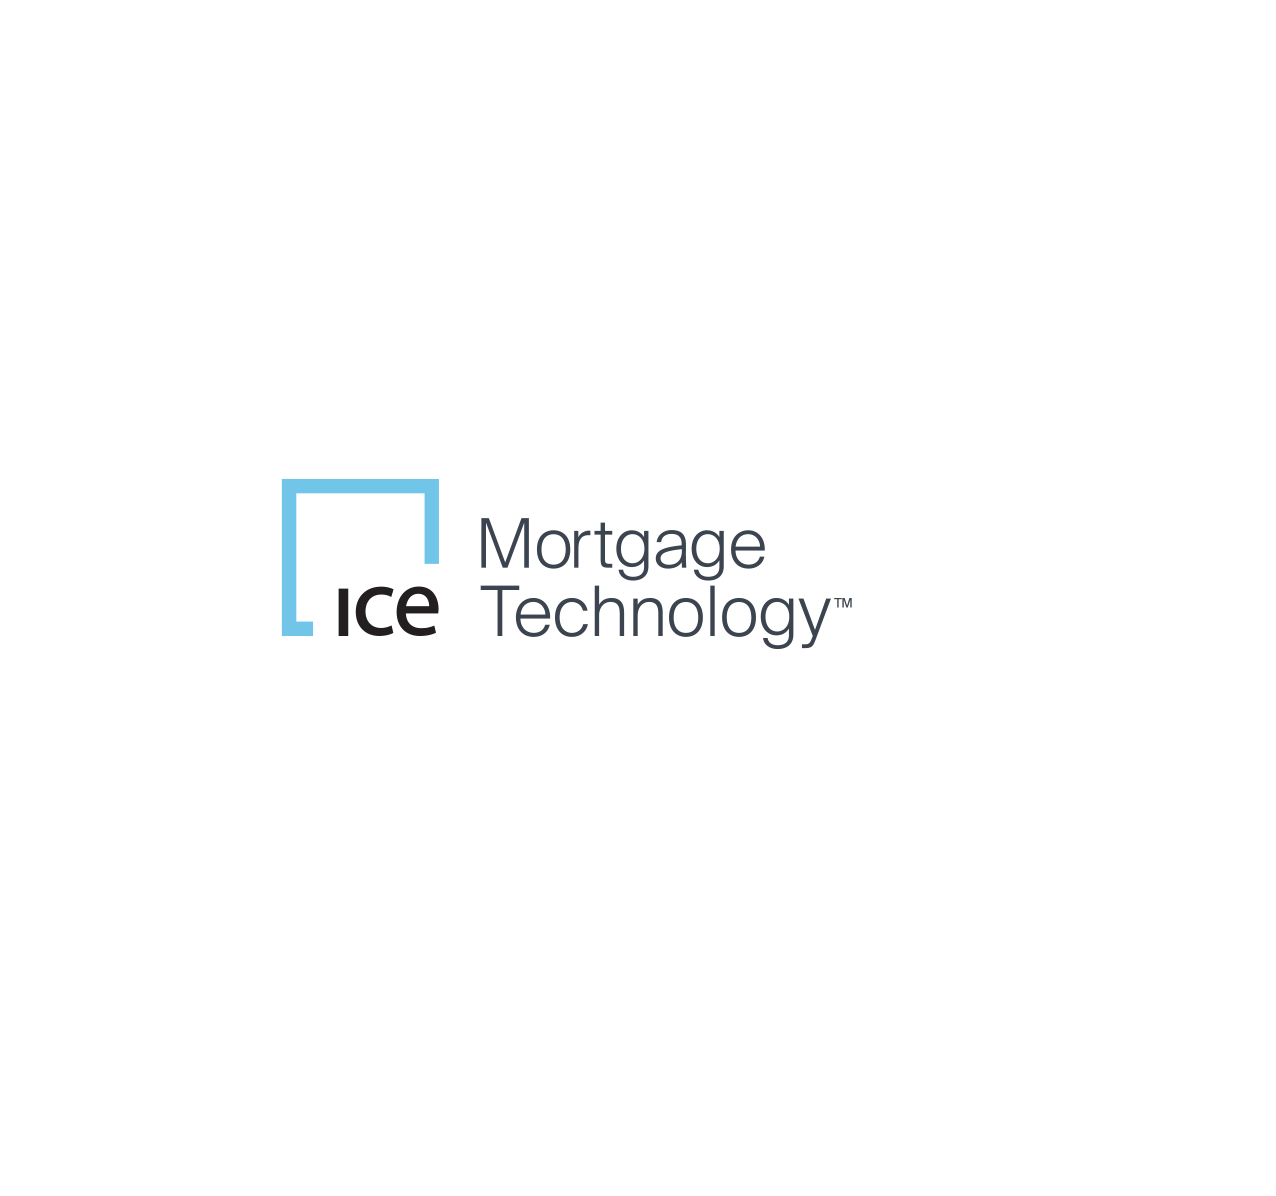 Pro Arte 2021: 18.05. Spotkanie online z ICE Mortgage Technology "Wszystko co chcecie wiedzieć o UX Design, ale boicie się zapytać - jak się odnaleźć w branży IT po ASP - oczami absolwenta WFP"